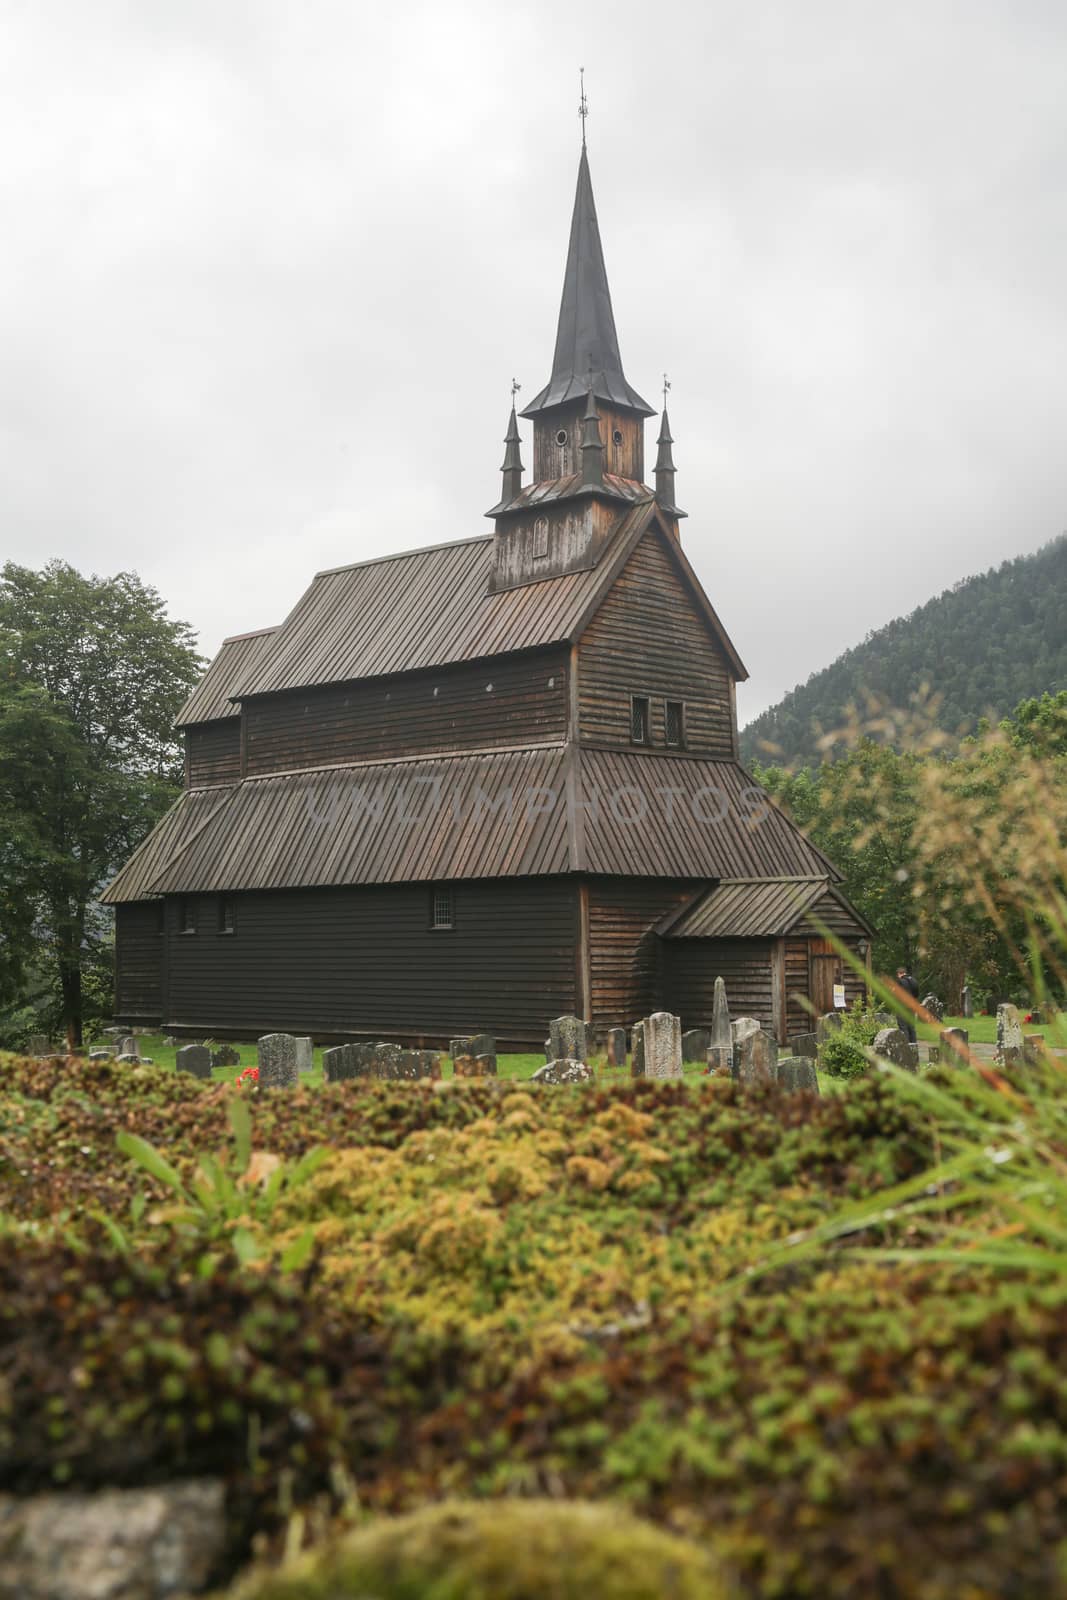 Kaupanger Stave Church by Kartouchken